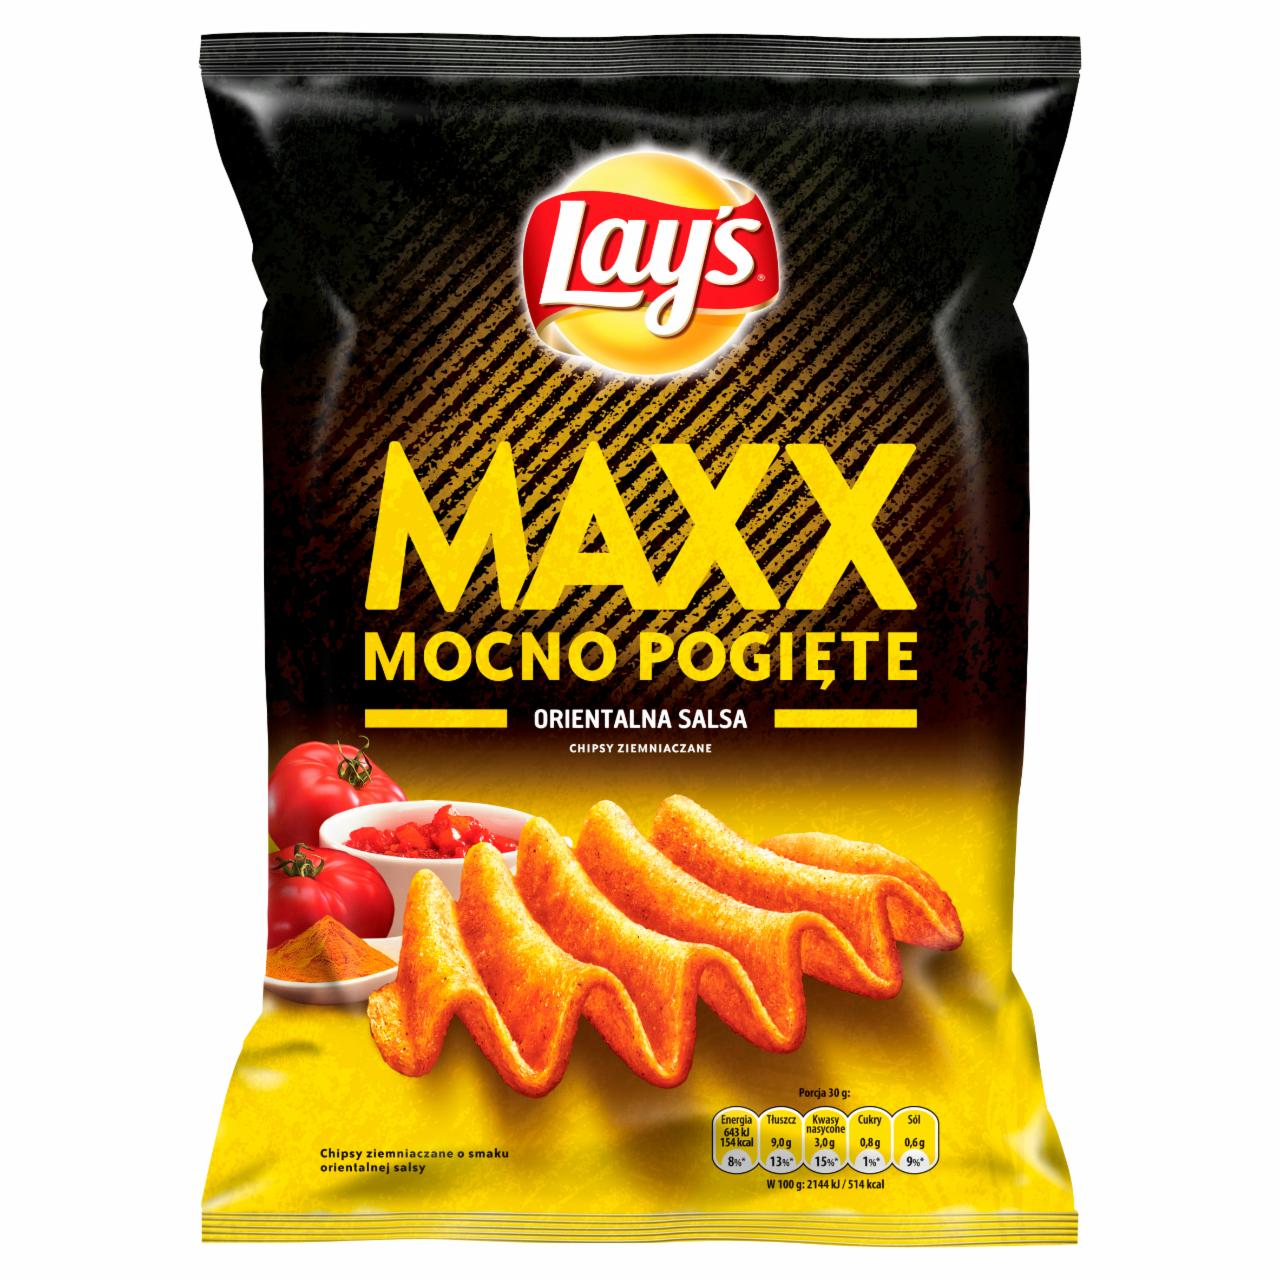 Zdjęcia - Lay's Maxx Mocno Pogięte o smaku Orientalna salsa Chipsy ziemniaczane 140 g